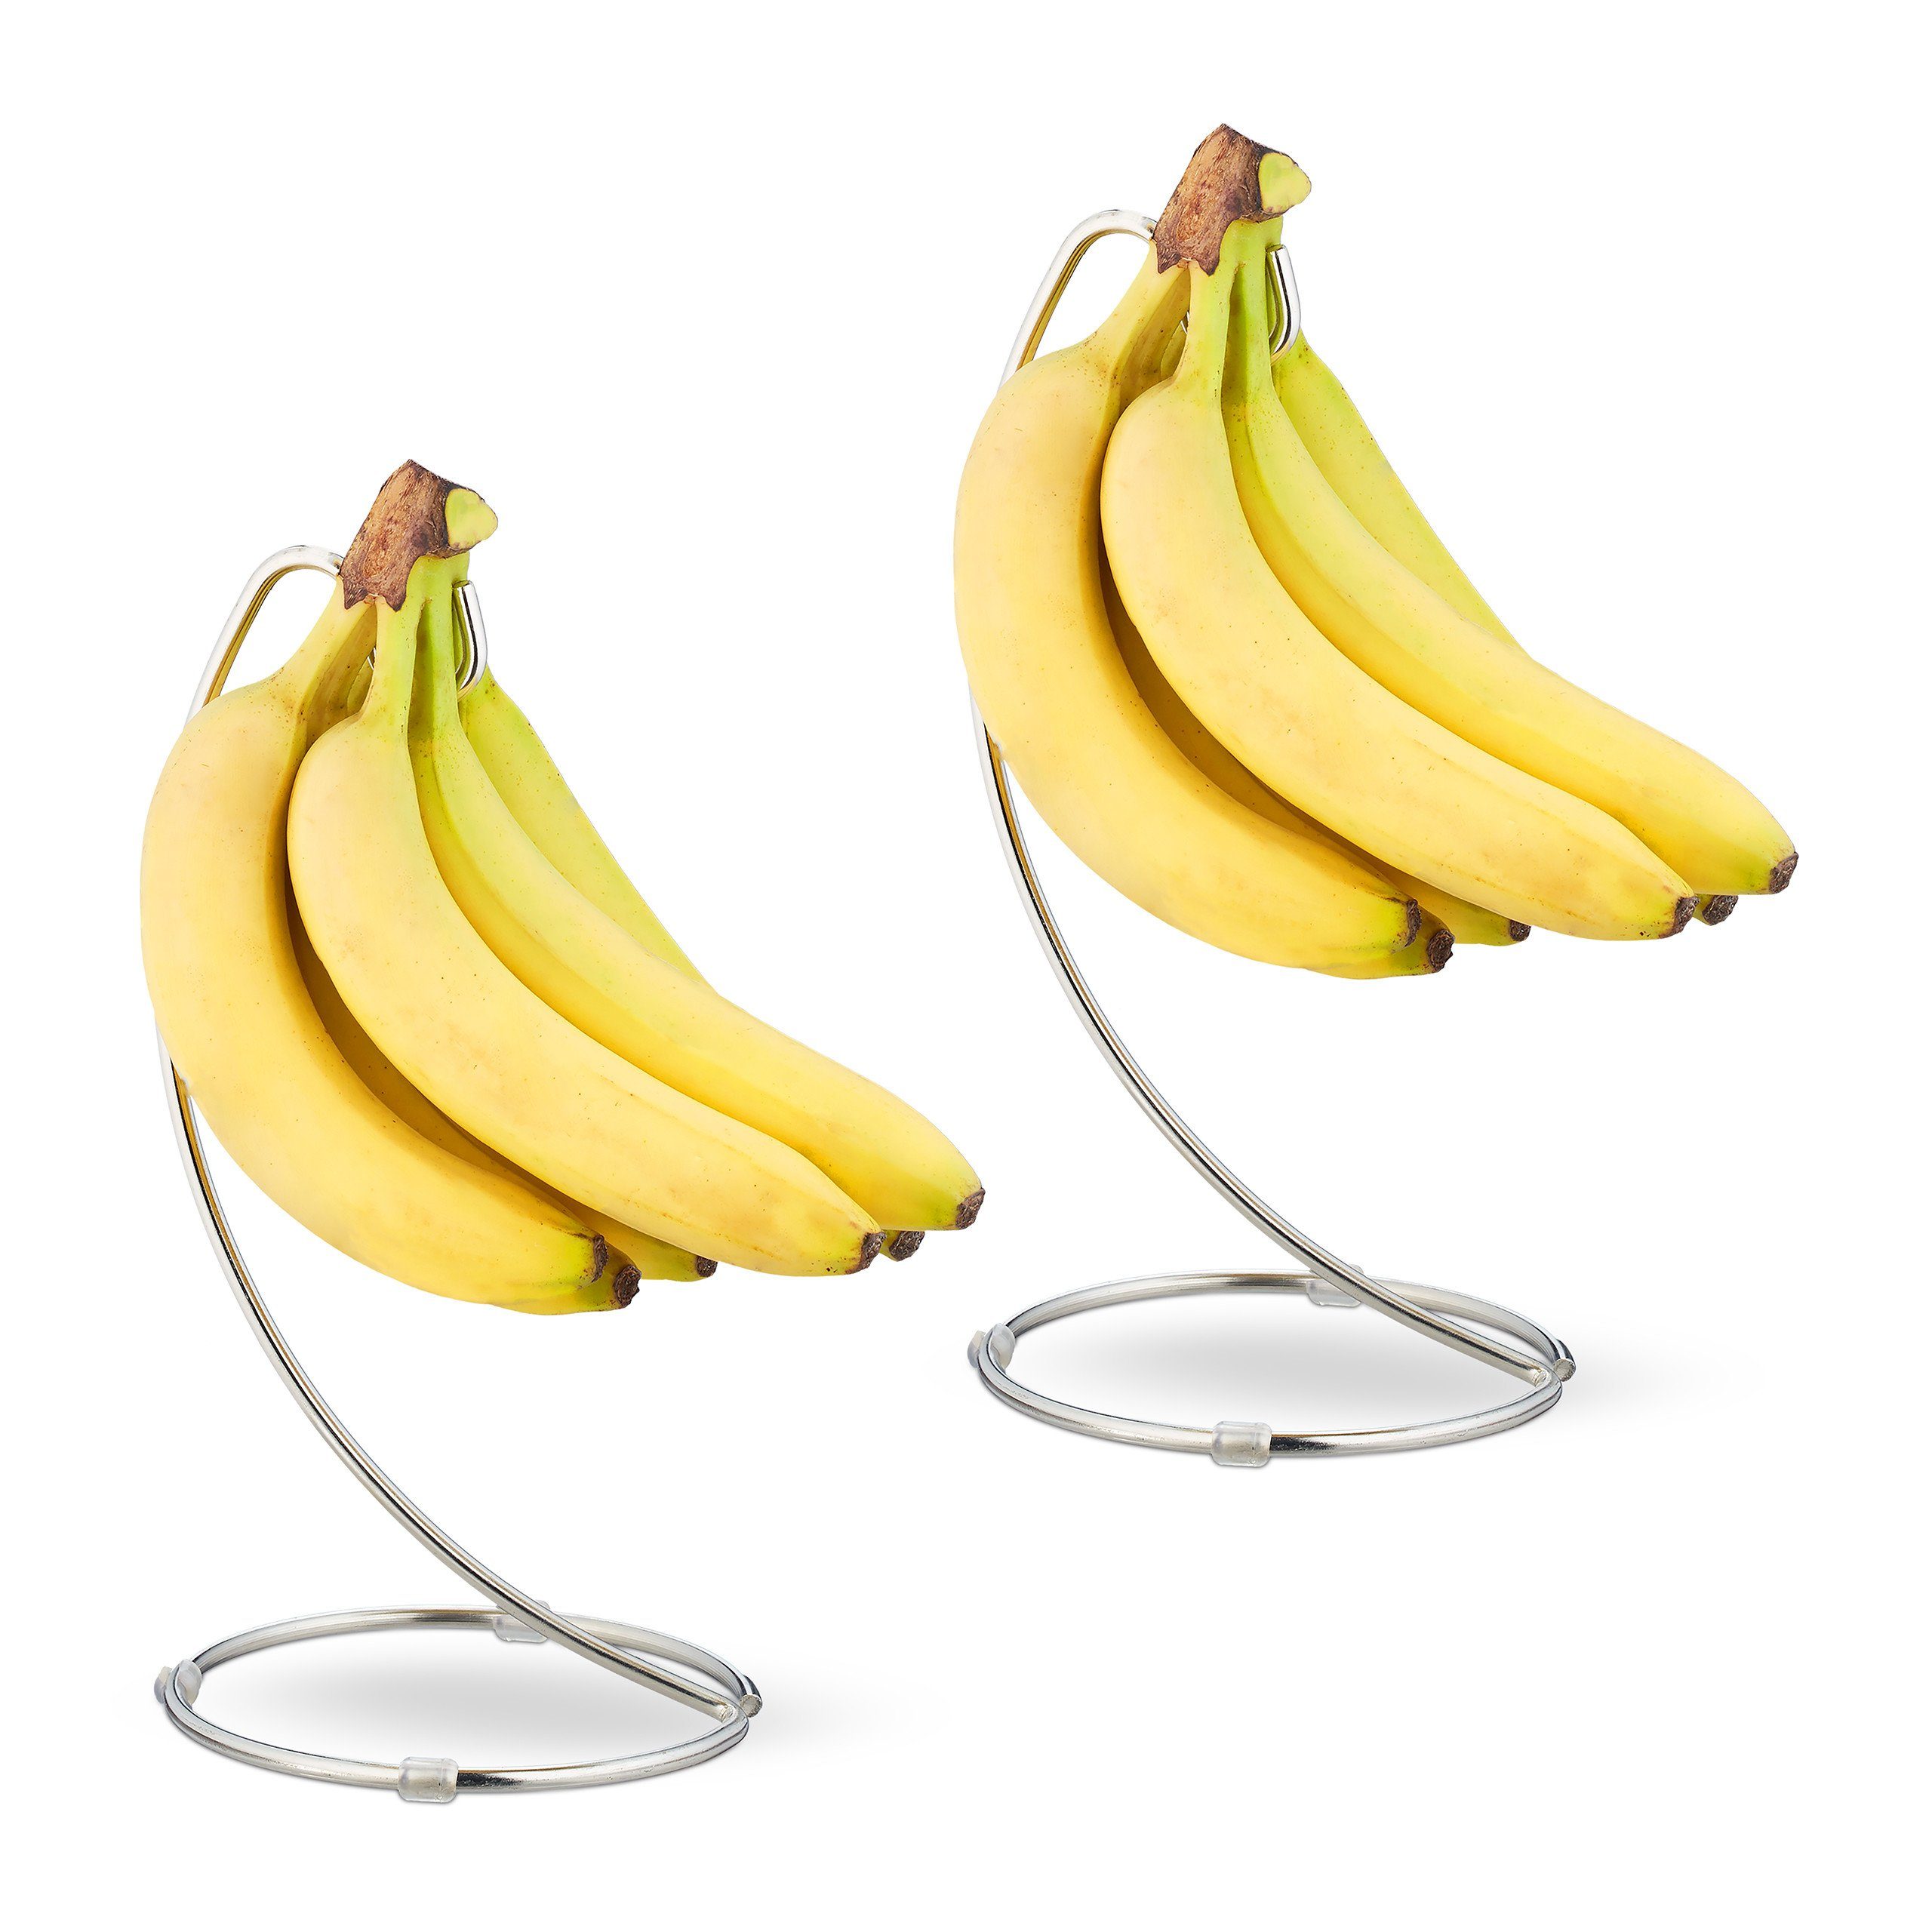 relaxdays Obstschale 2 x Bananenhalter mit Haken, Eisen | Obstschalen